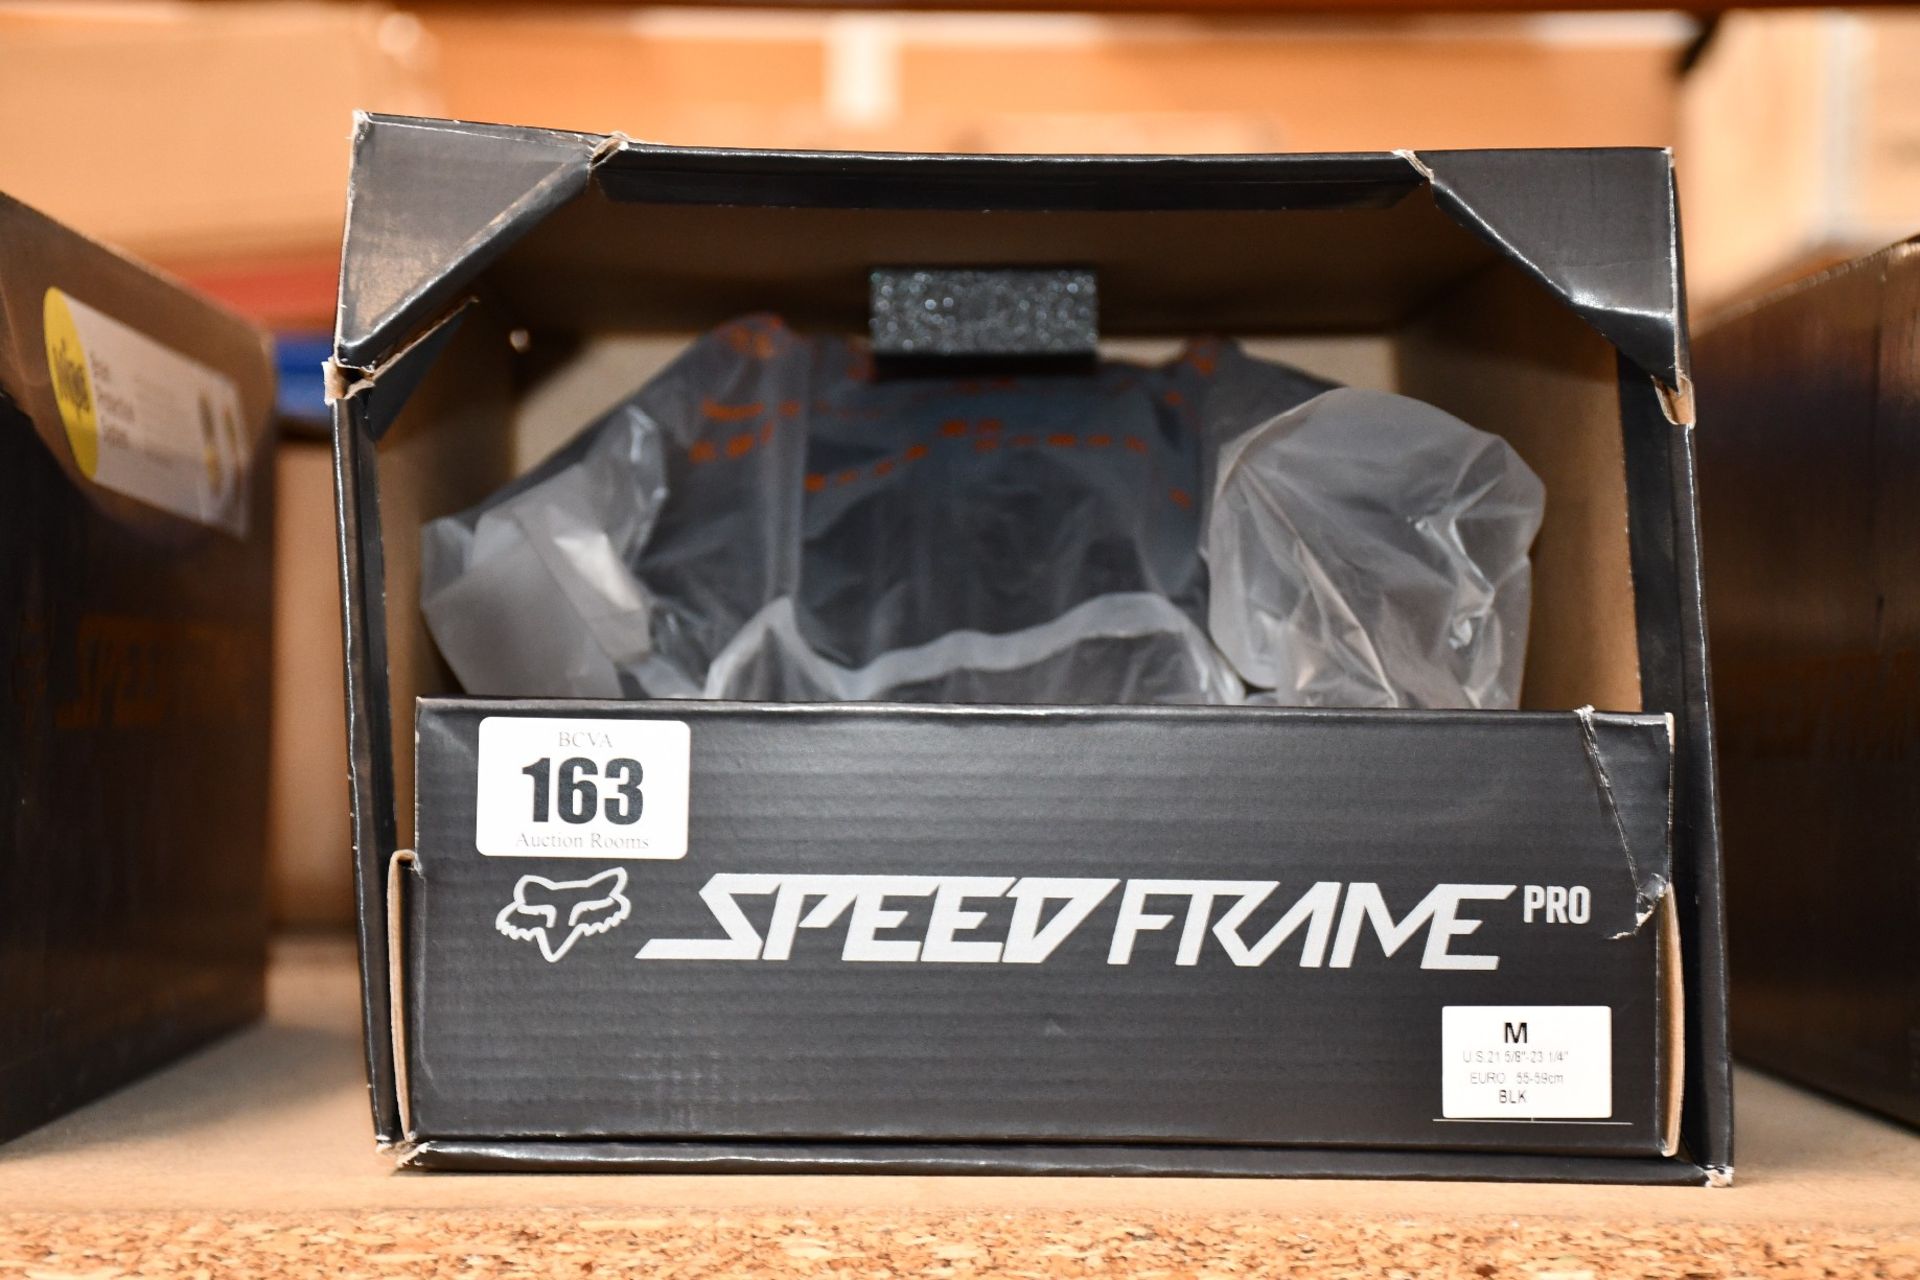 An as new Fox Speedframe Pro Mountain Bike Helmet in black (M).